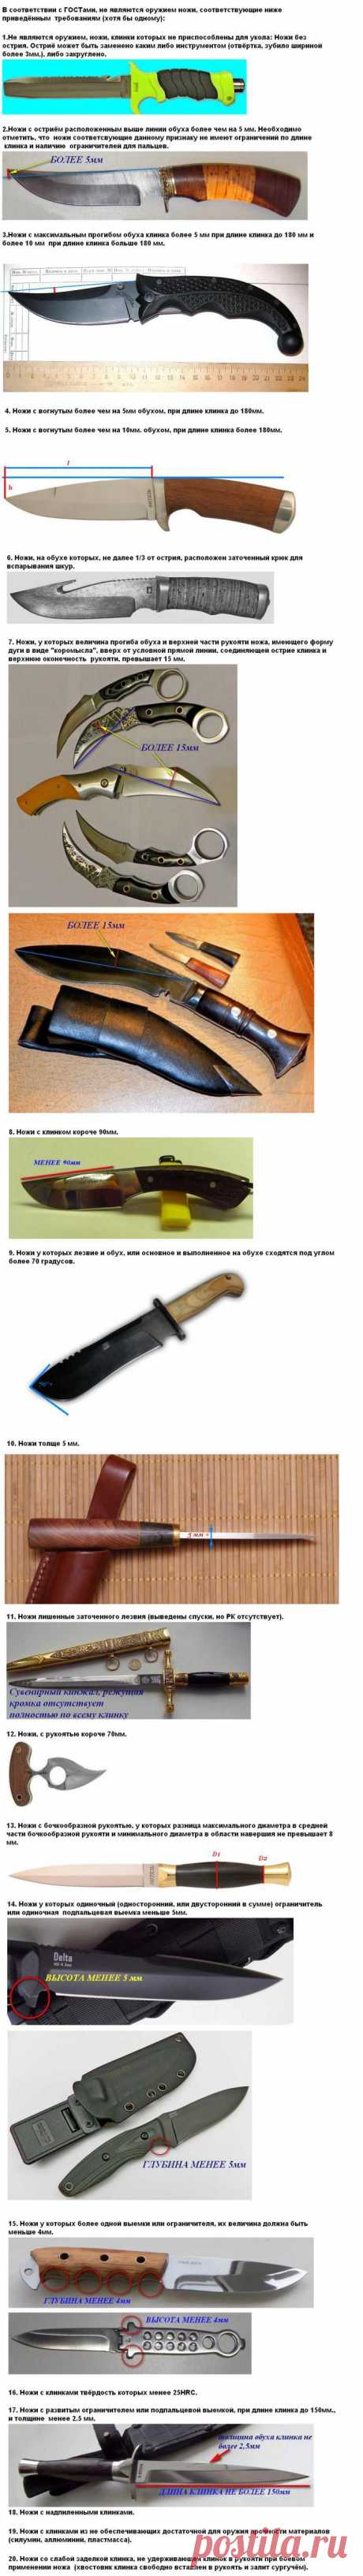 Нож ножу рознь - Энциклопедия оружия